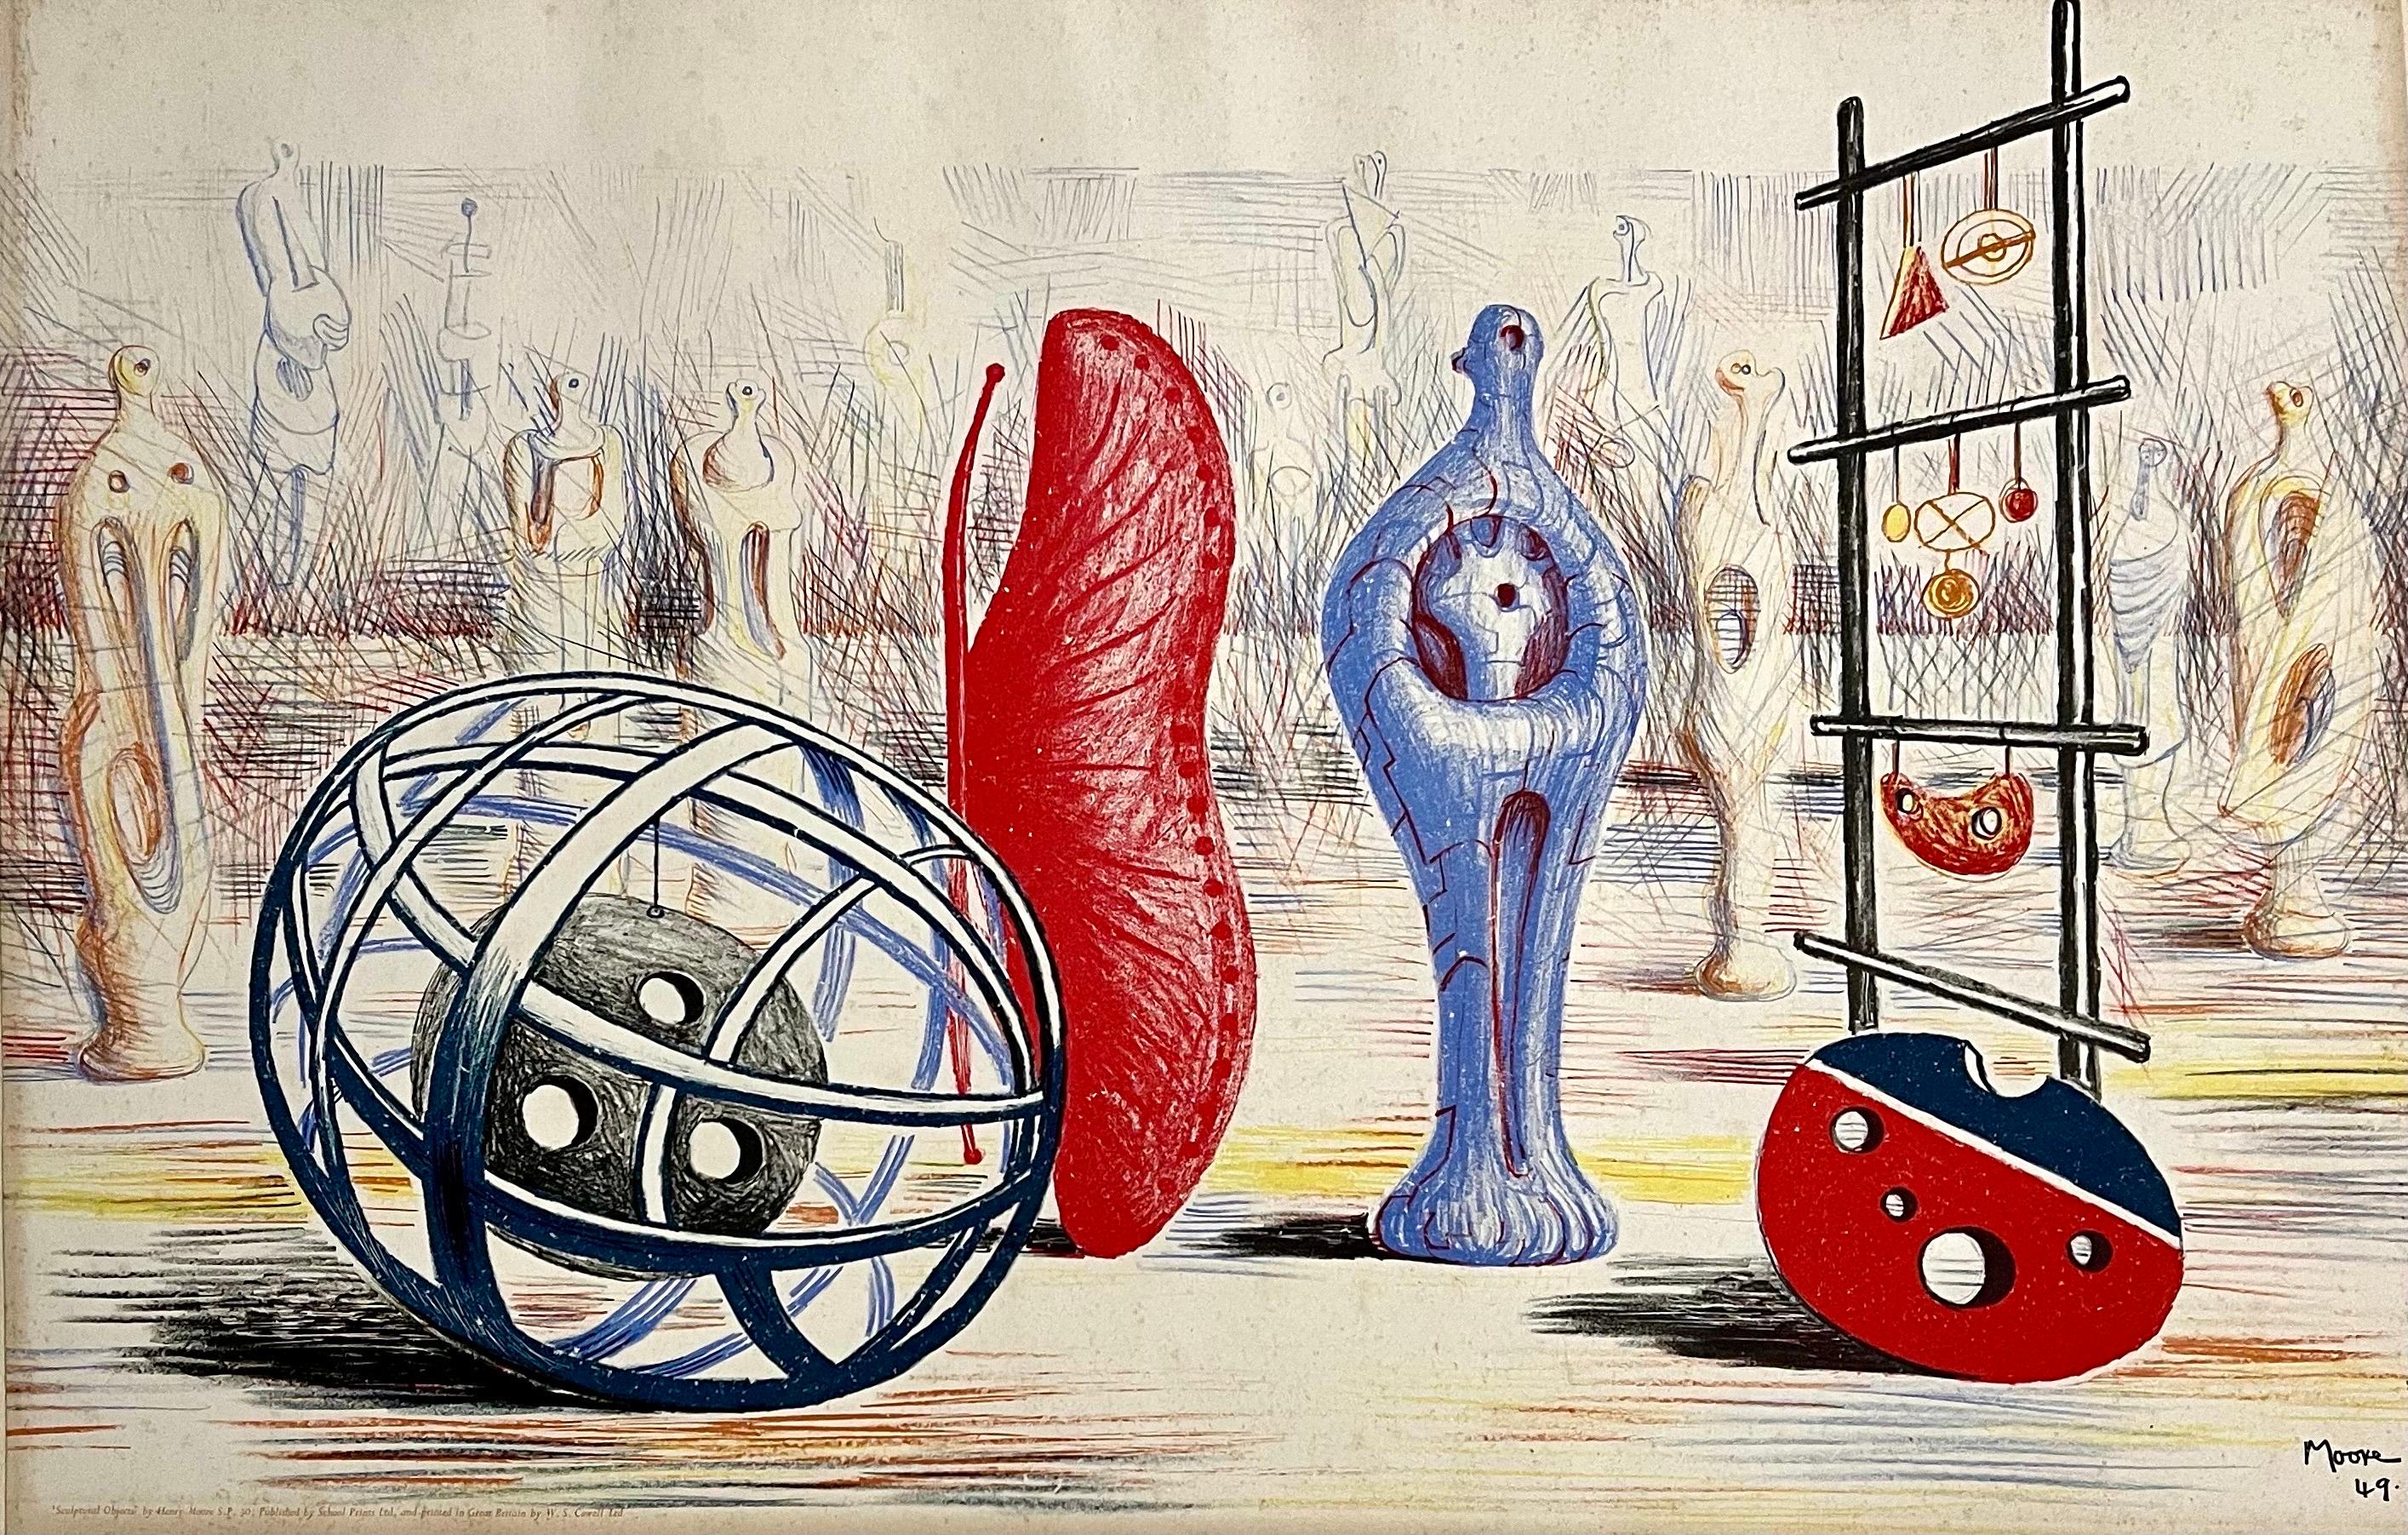 Henry Moore (Brite, 1898 - 1986) 
"Skulpturale Objekte" - 1949 
Lithographie, in der Platte signiert. 
Montiert auf Trägerplatte
Bildgröße: 19,5 x 30 Zoll. 
Blattgröße: 22 x 32,5 Zoll. 
Gedruckt von W.S. Cowell Ltd. in Ipswich, Barnard Press und